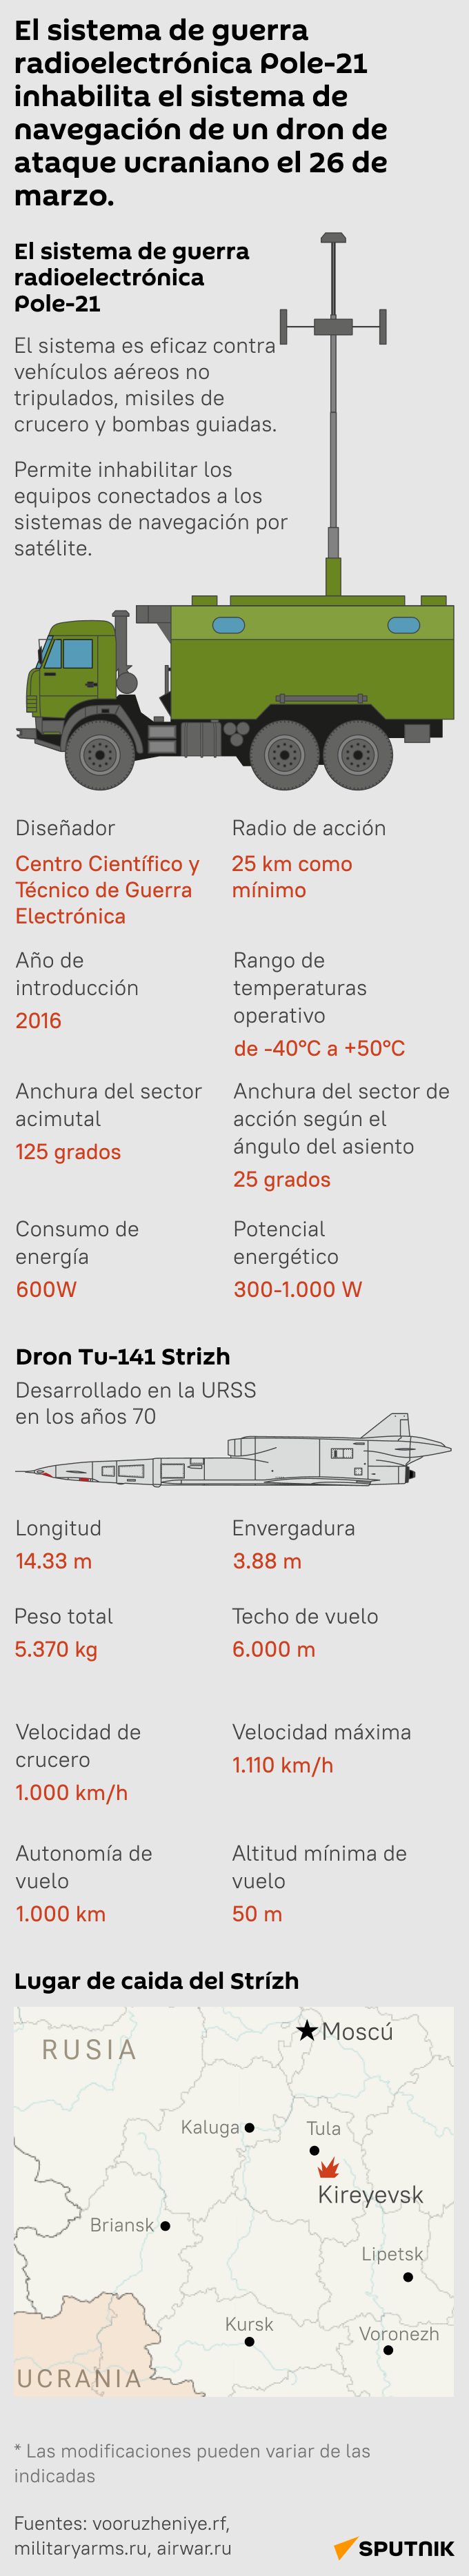 El sistema de guerra radioelectrónica Pole-21 inhabilita el sistema de navegación de un dron de ataque ucraniano el 26 de marzo - Sputnik Mundo